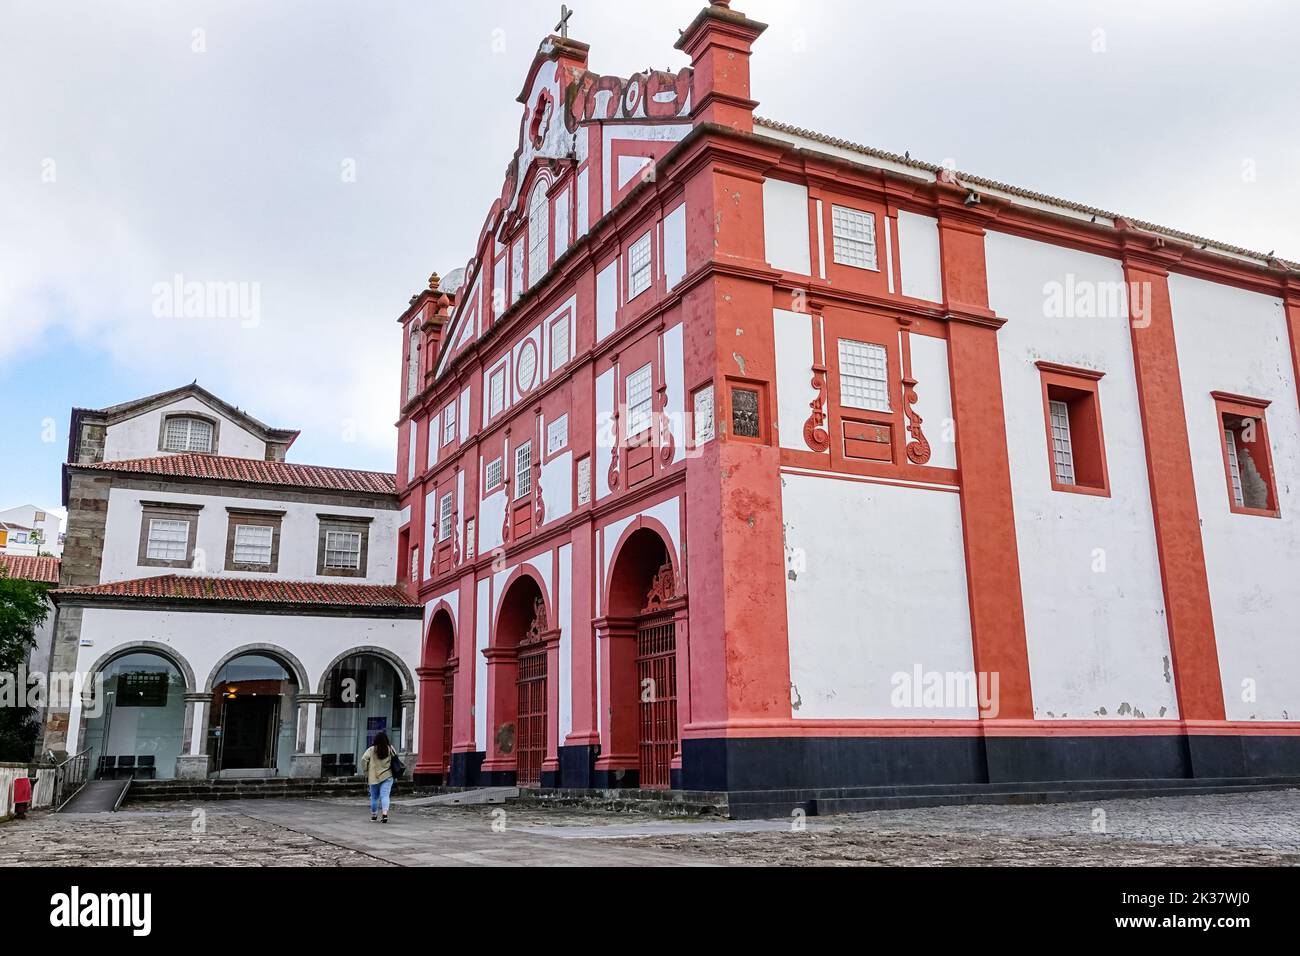 The San Francisco Convent, Convento de São Francisco, and Museum of Angra do Heroismo in Angra do Heroismo, Terceira Island, Azores, Portugal. Stock Photo